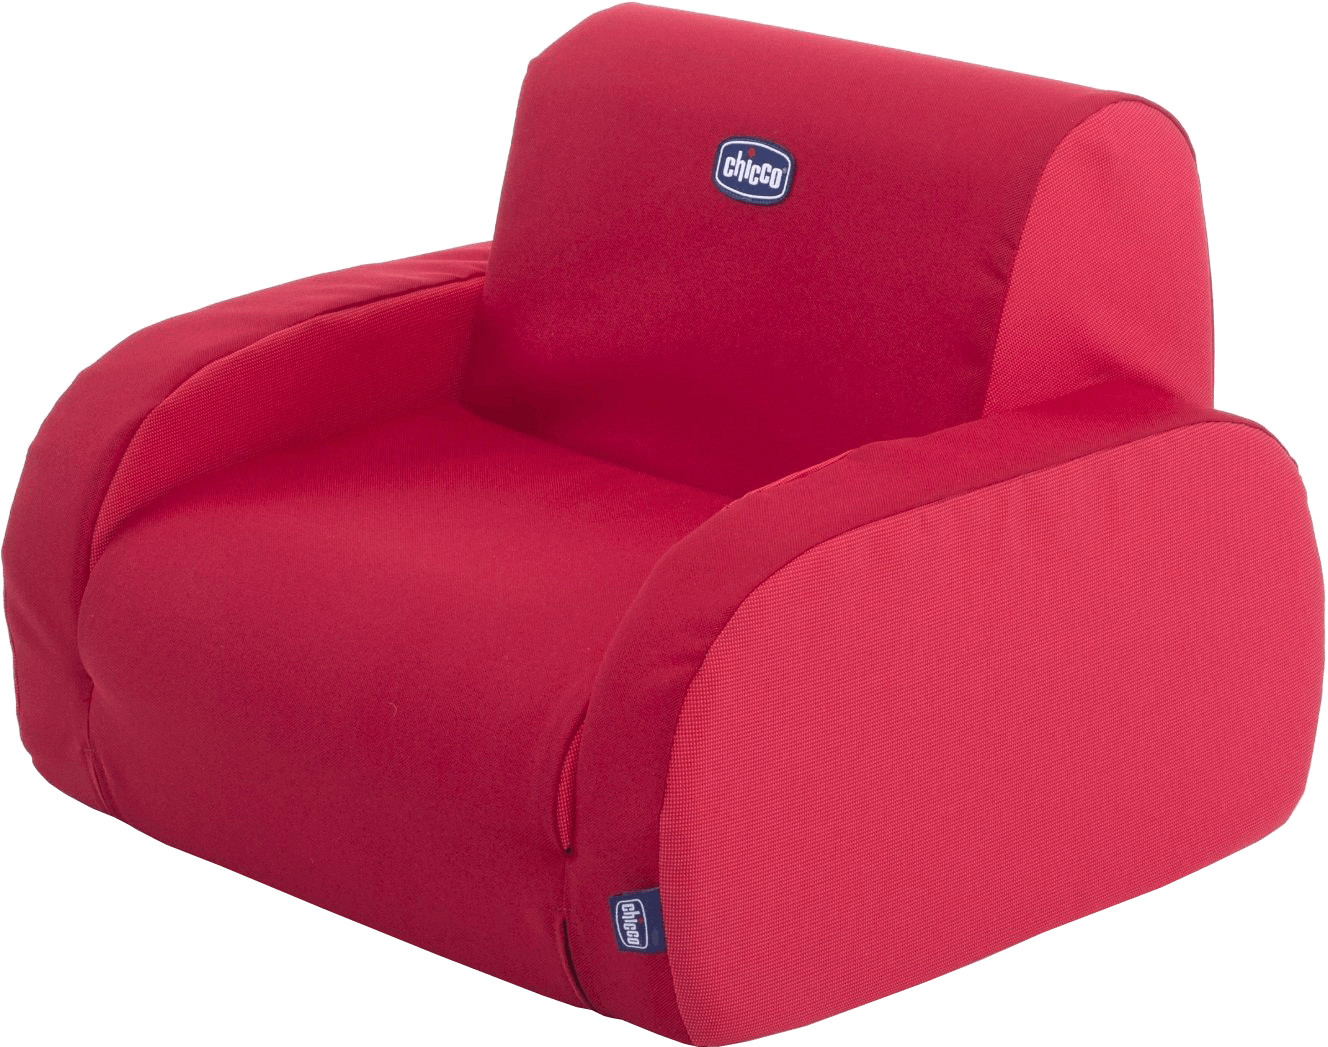 Chicco Twist sillón para niños rojo